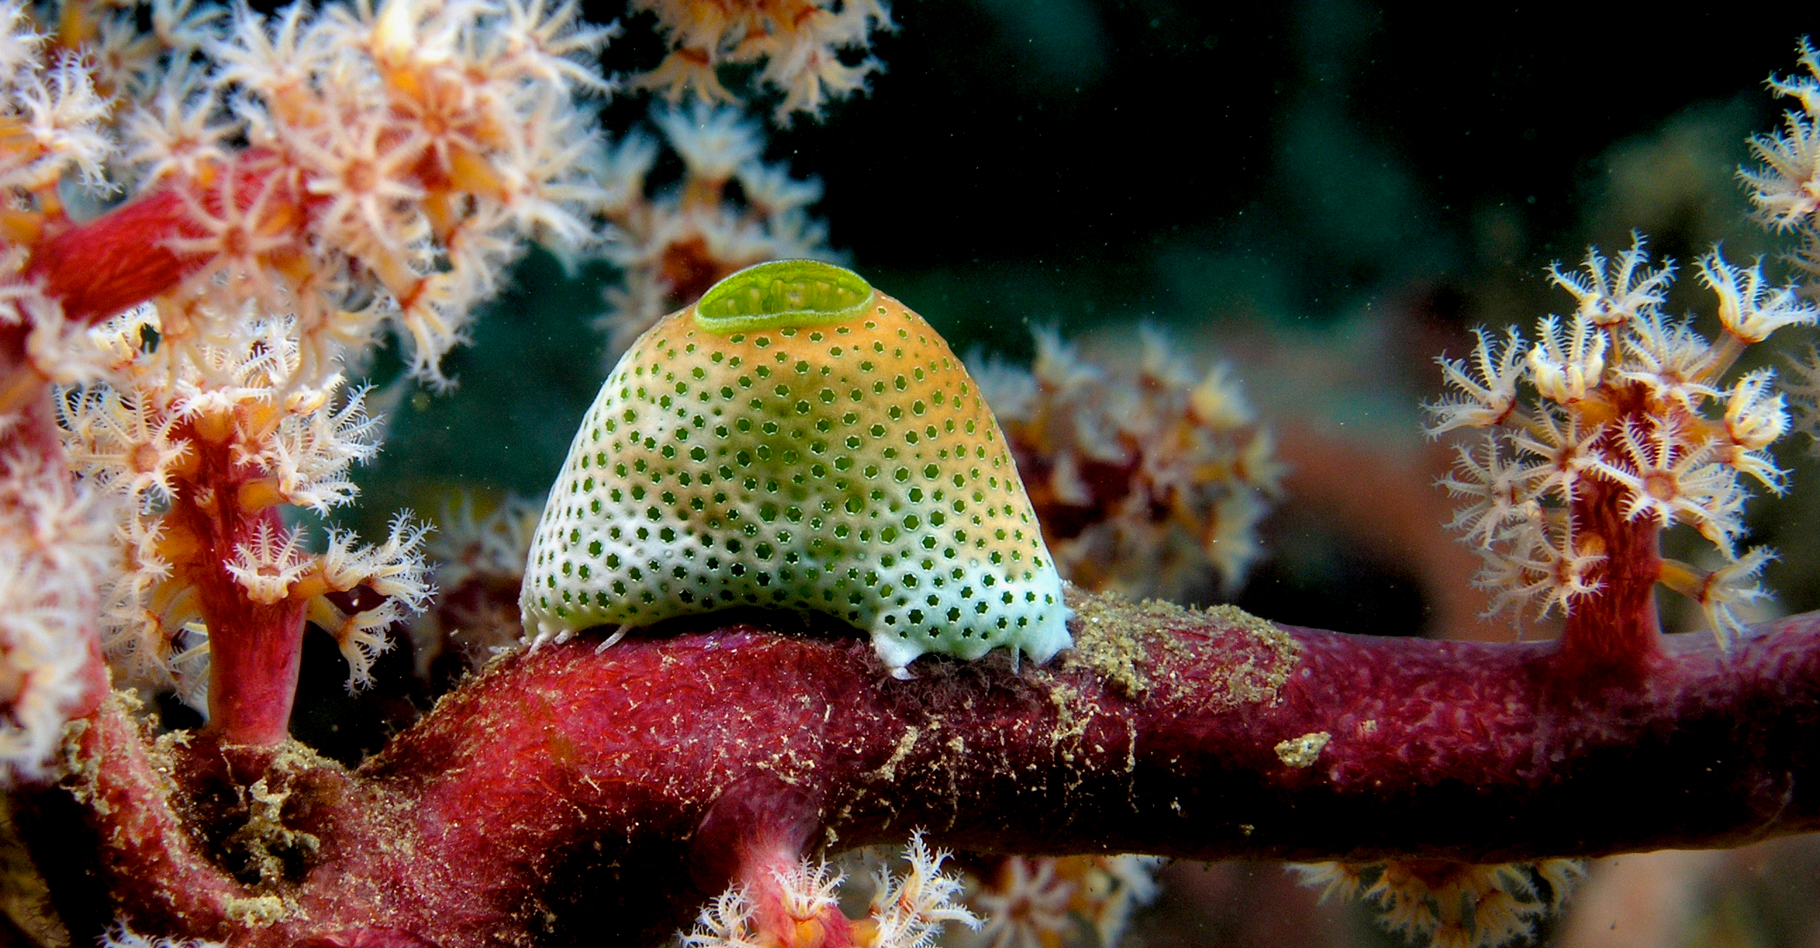 Atriolum robustum (Ascidie) sur un arbre souple constitué d'un ou plusieurs coraux. © Nick Hobgood - CC BY-NC 3.0